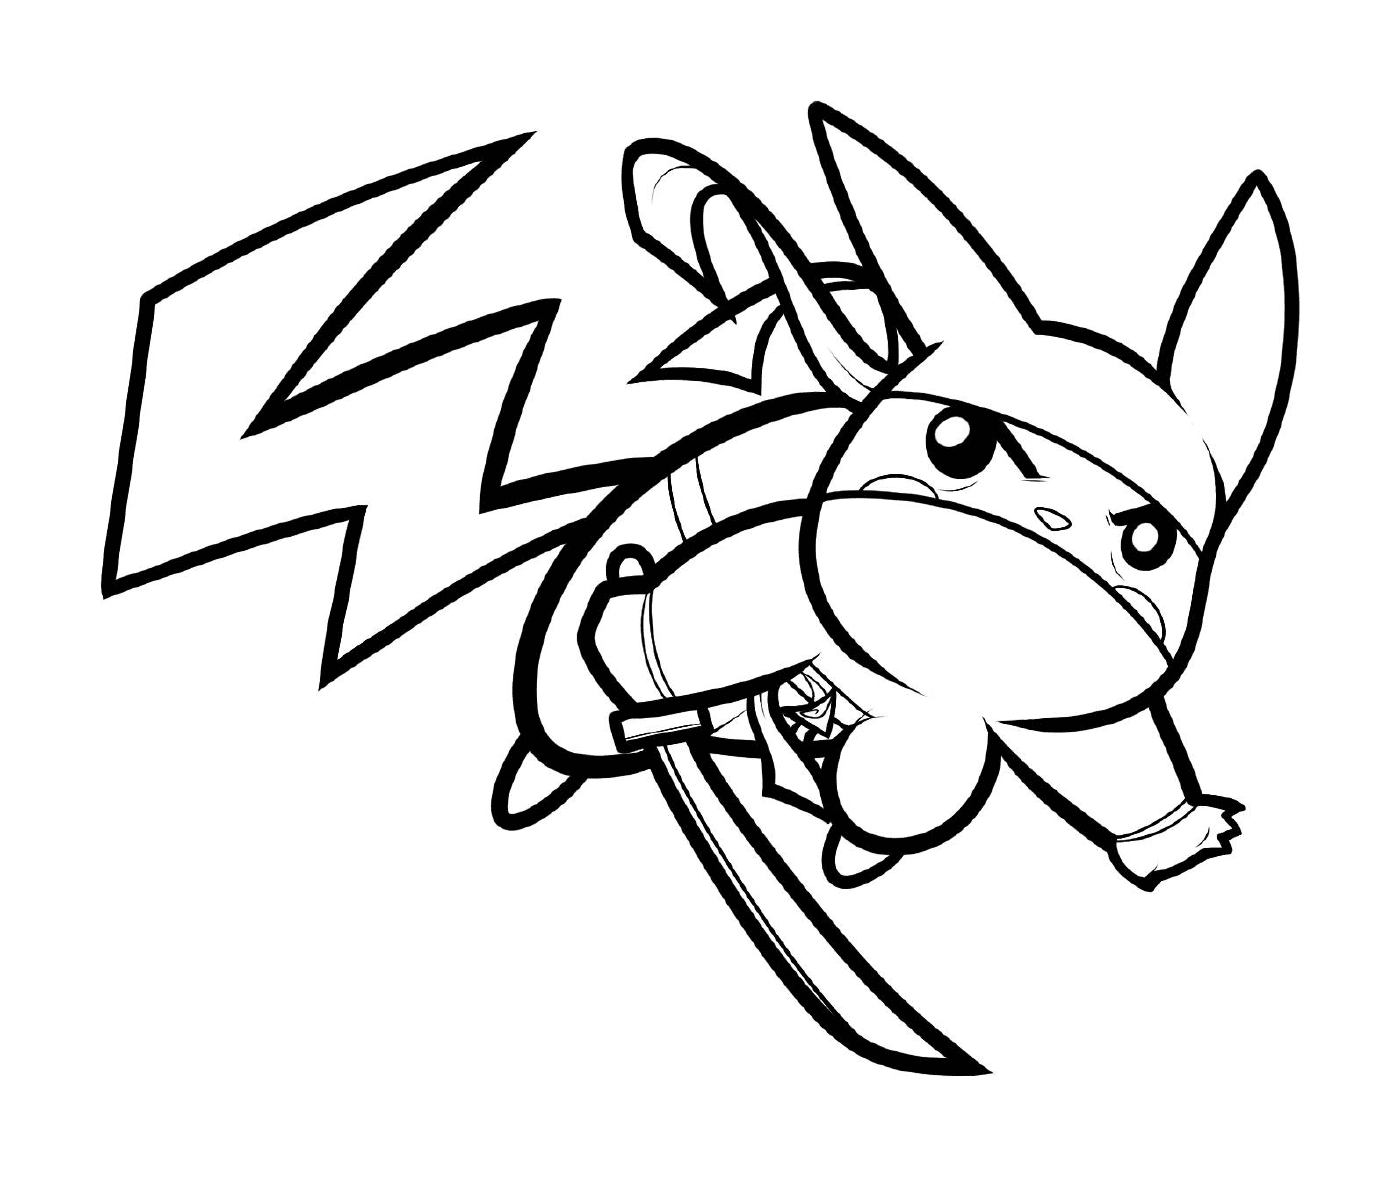  Pikachu mit einer Ninja-Haltung 